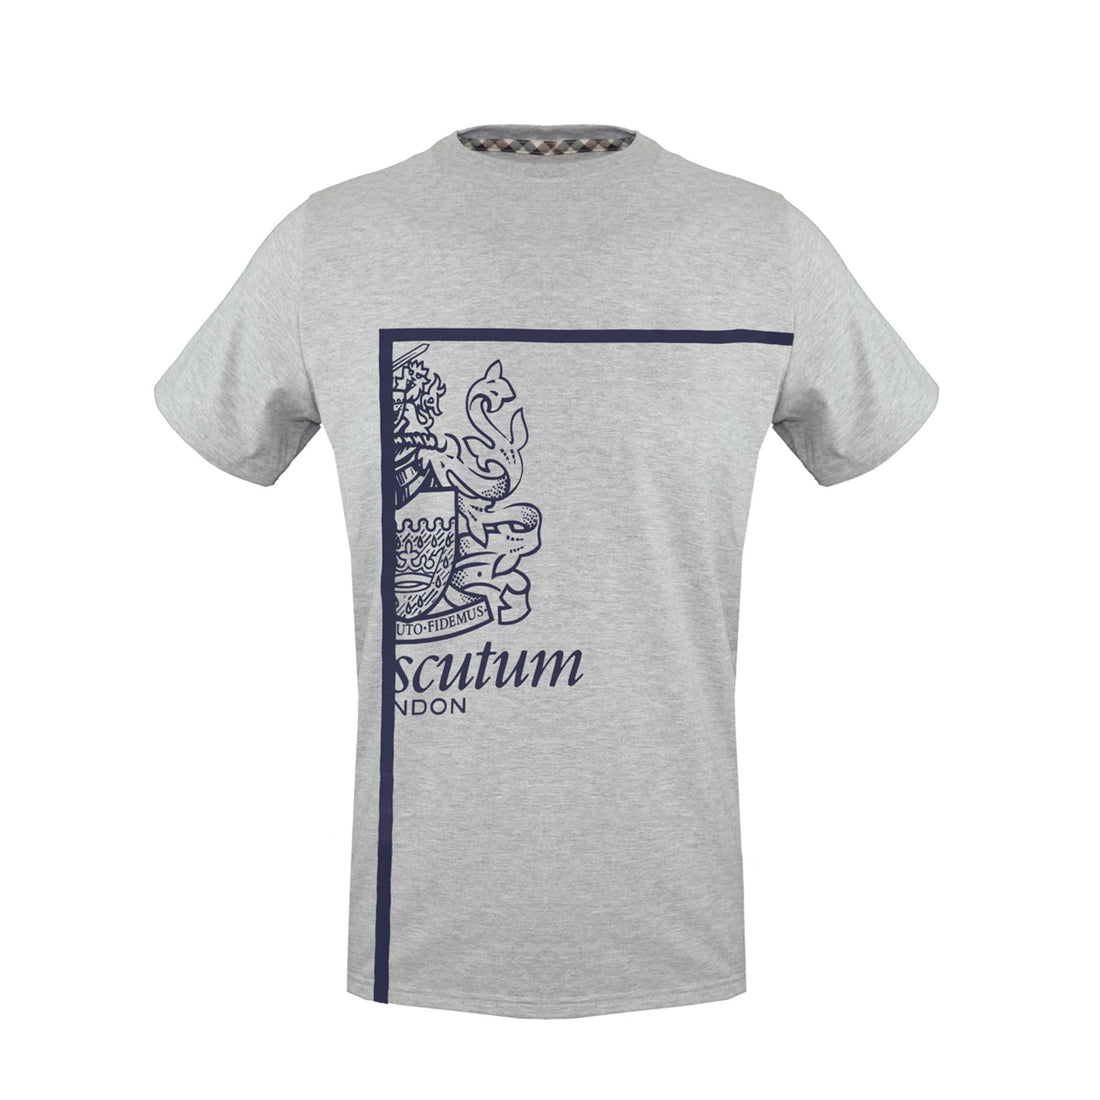 Aquascutum T-Shirts